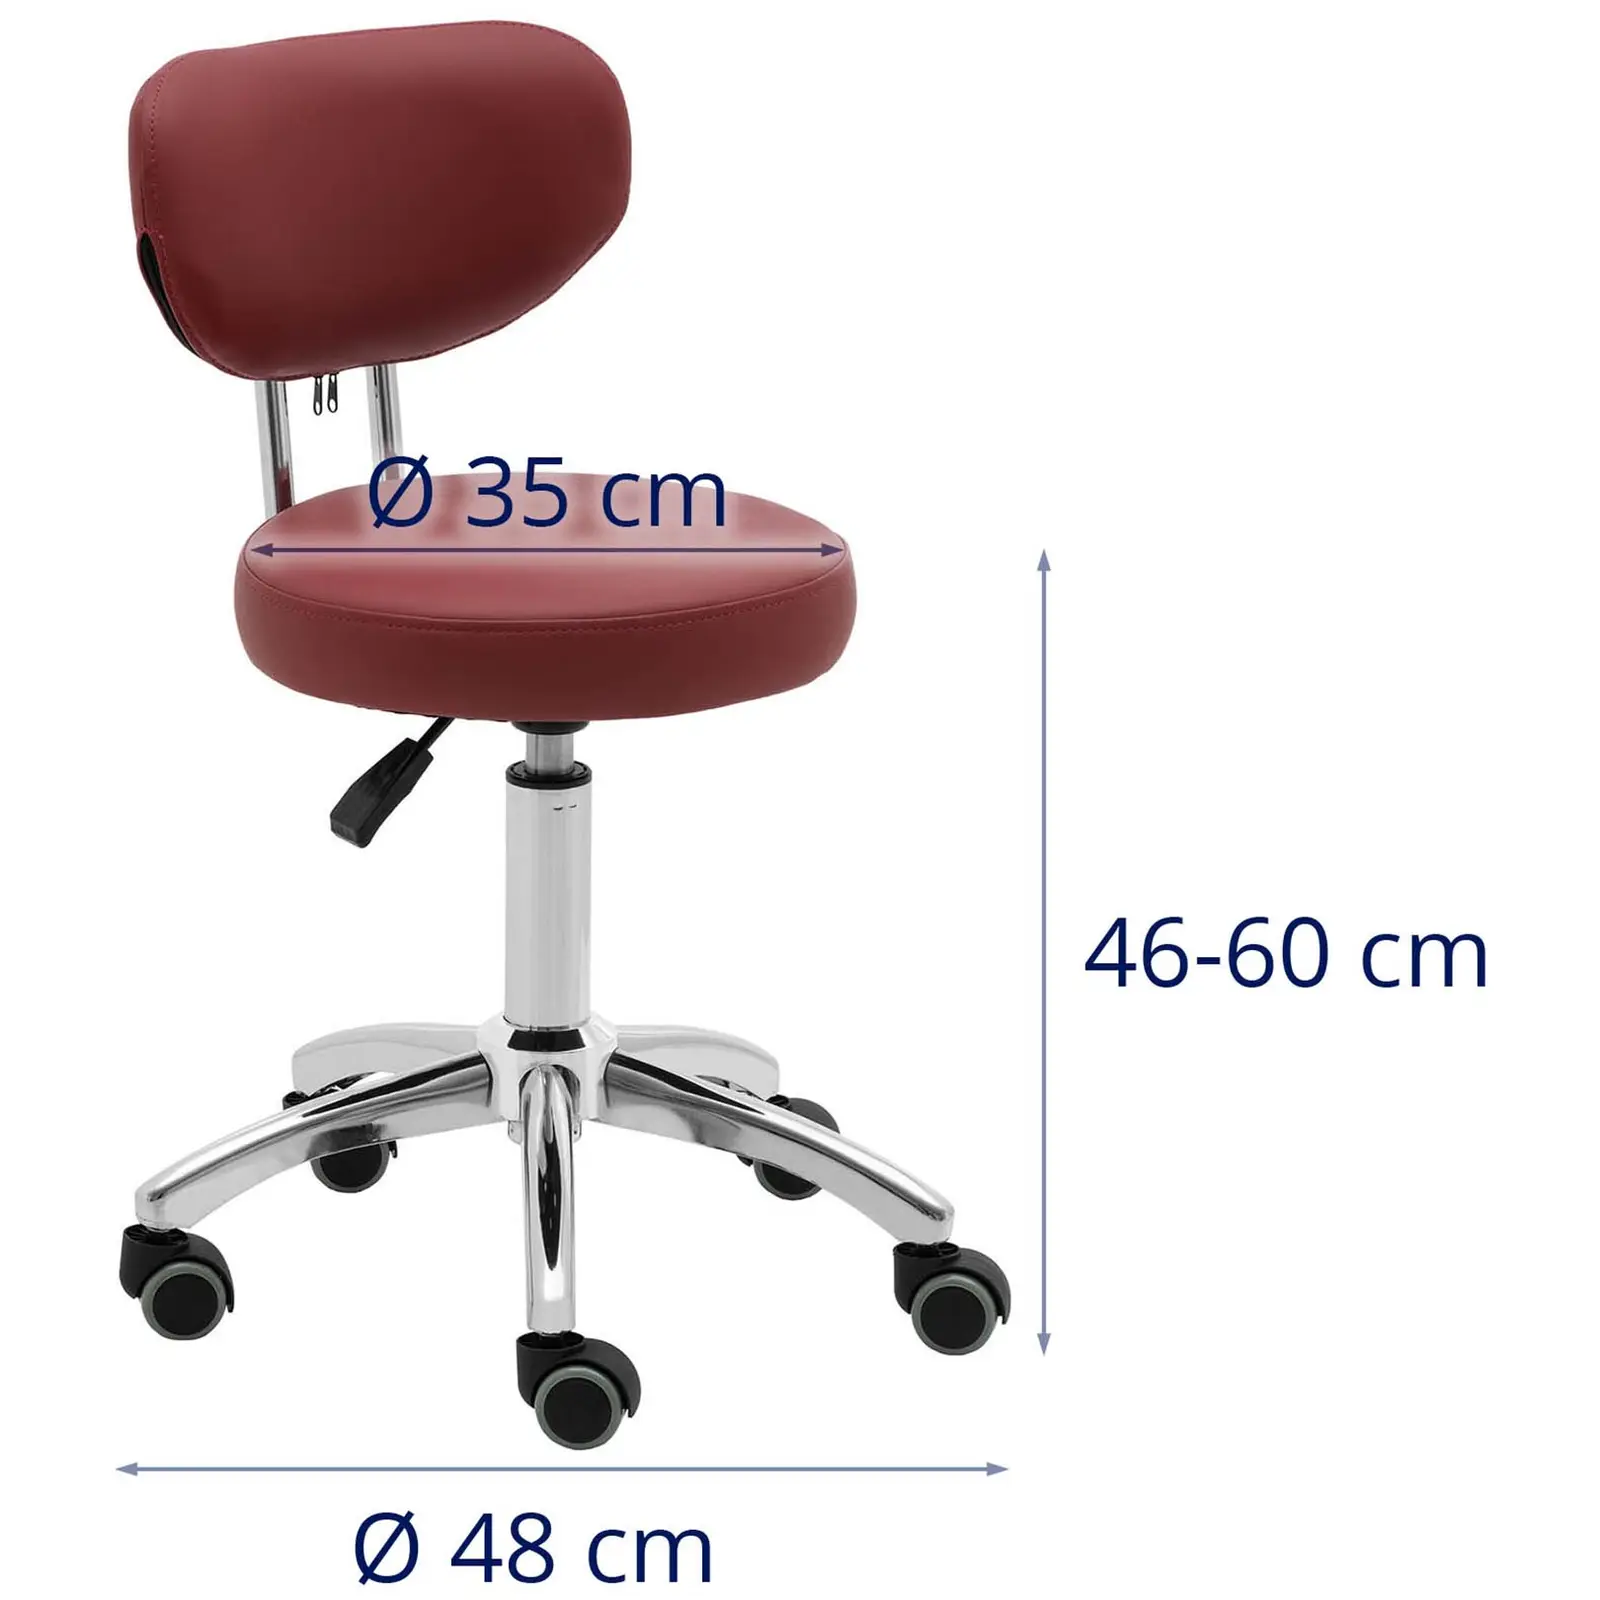 Cadeira para salão de beleza - 46 - 60 cm - 150 kg - bordô